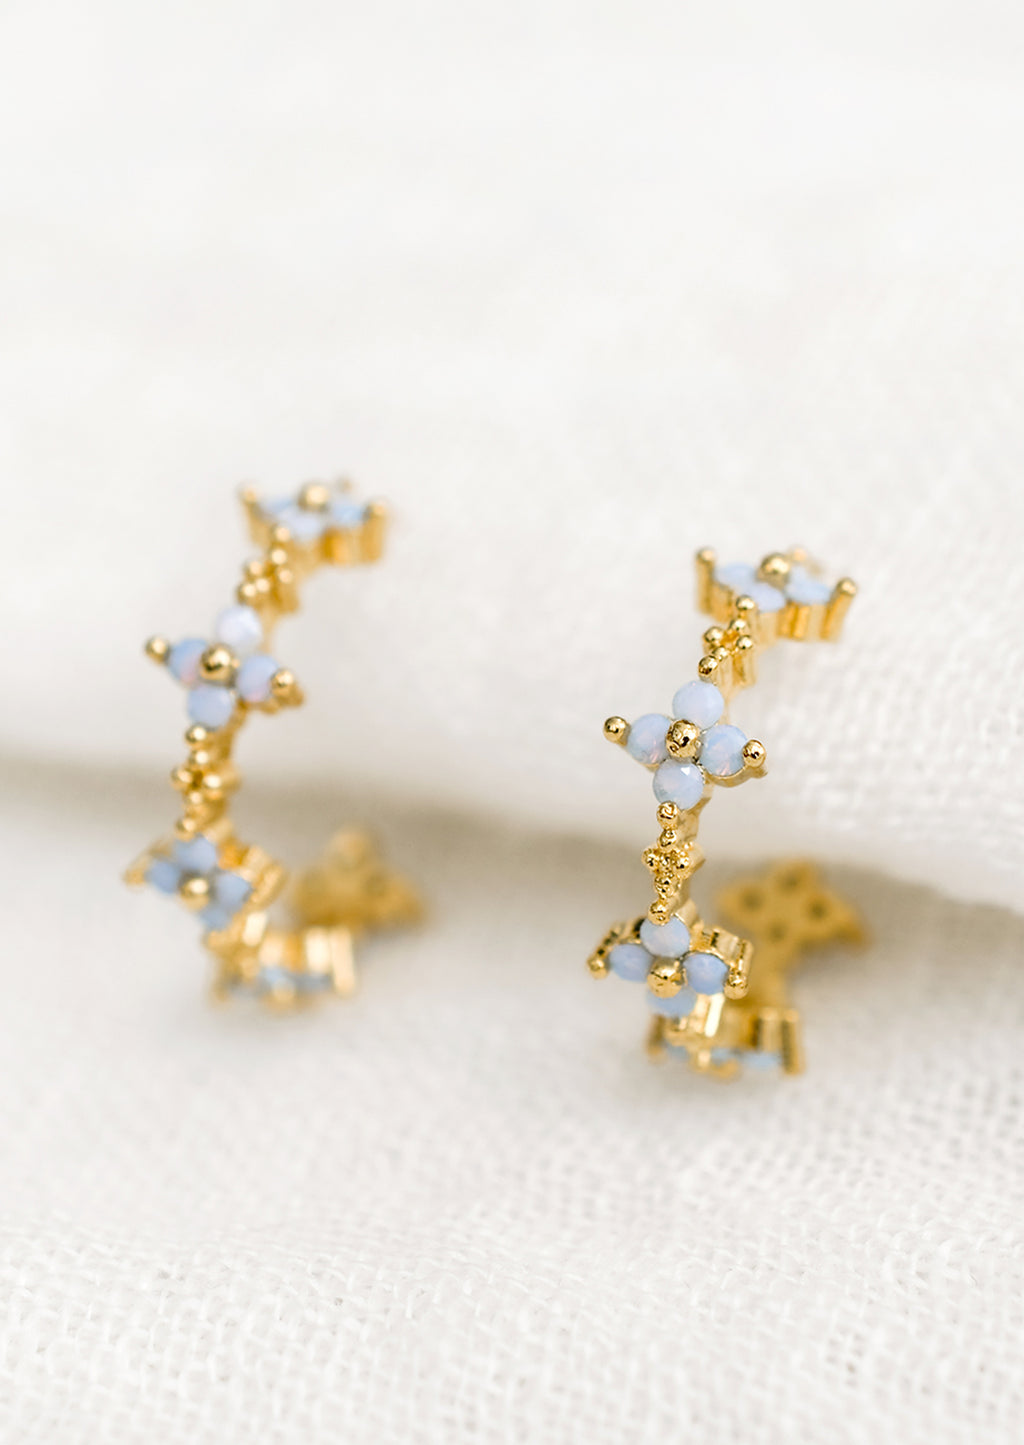 1: A pair of gold hoop earrings with periwinkle opal blue flowers.